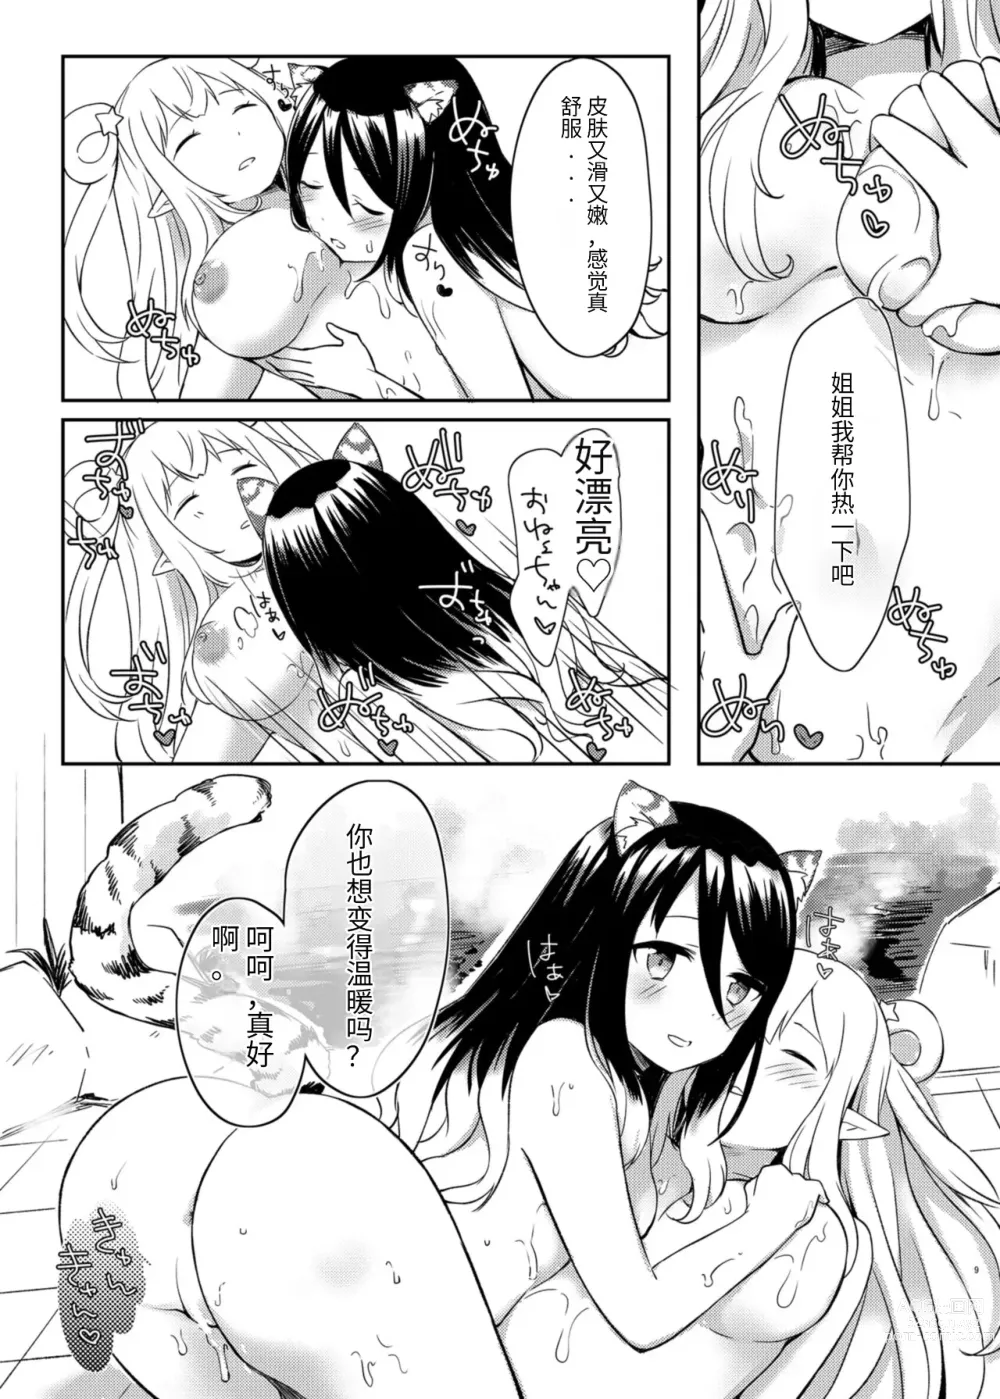 Page 9 of doujinshi Hatsune to Shiori no Yukemuri Daisakusen